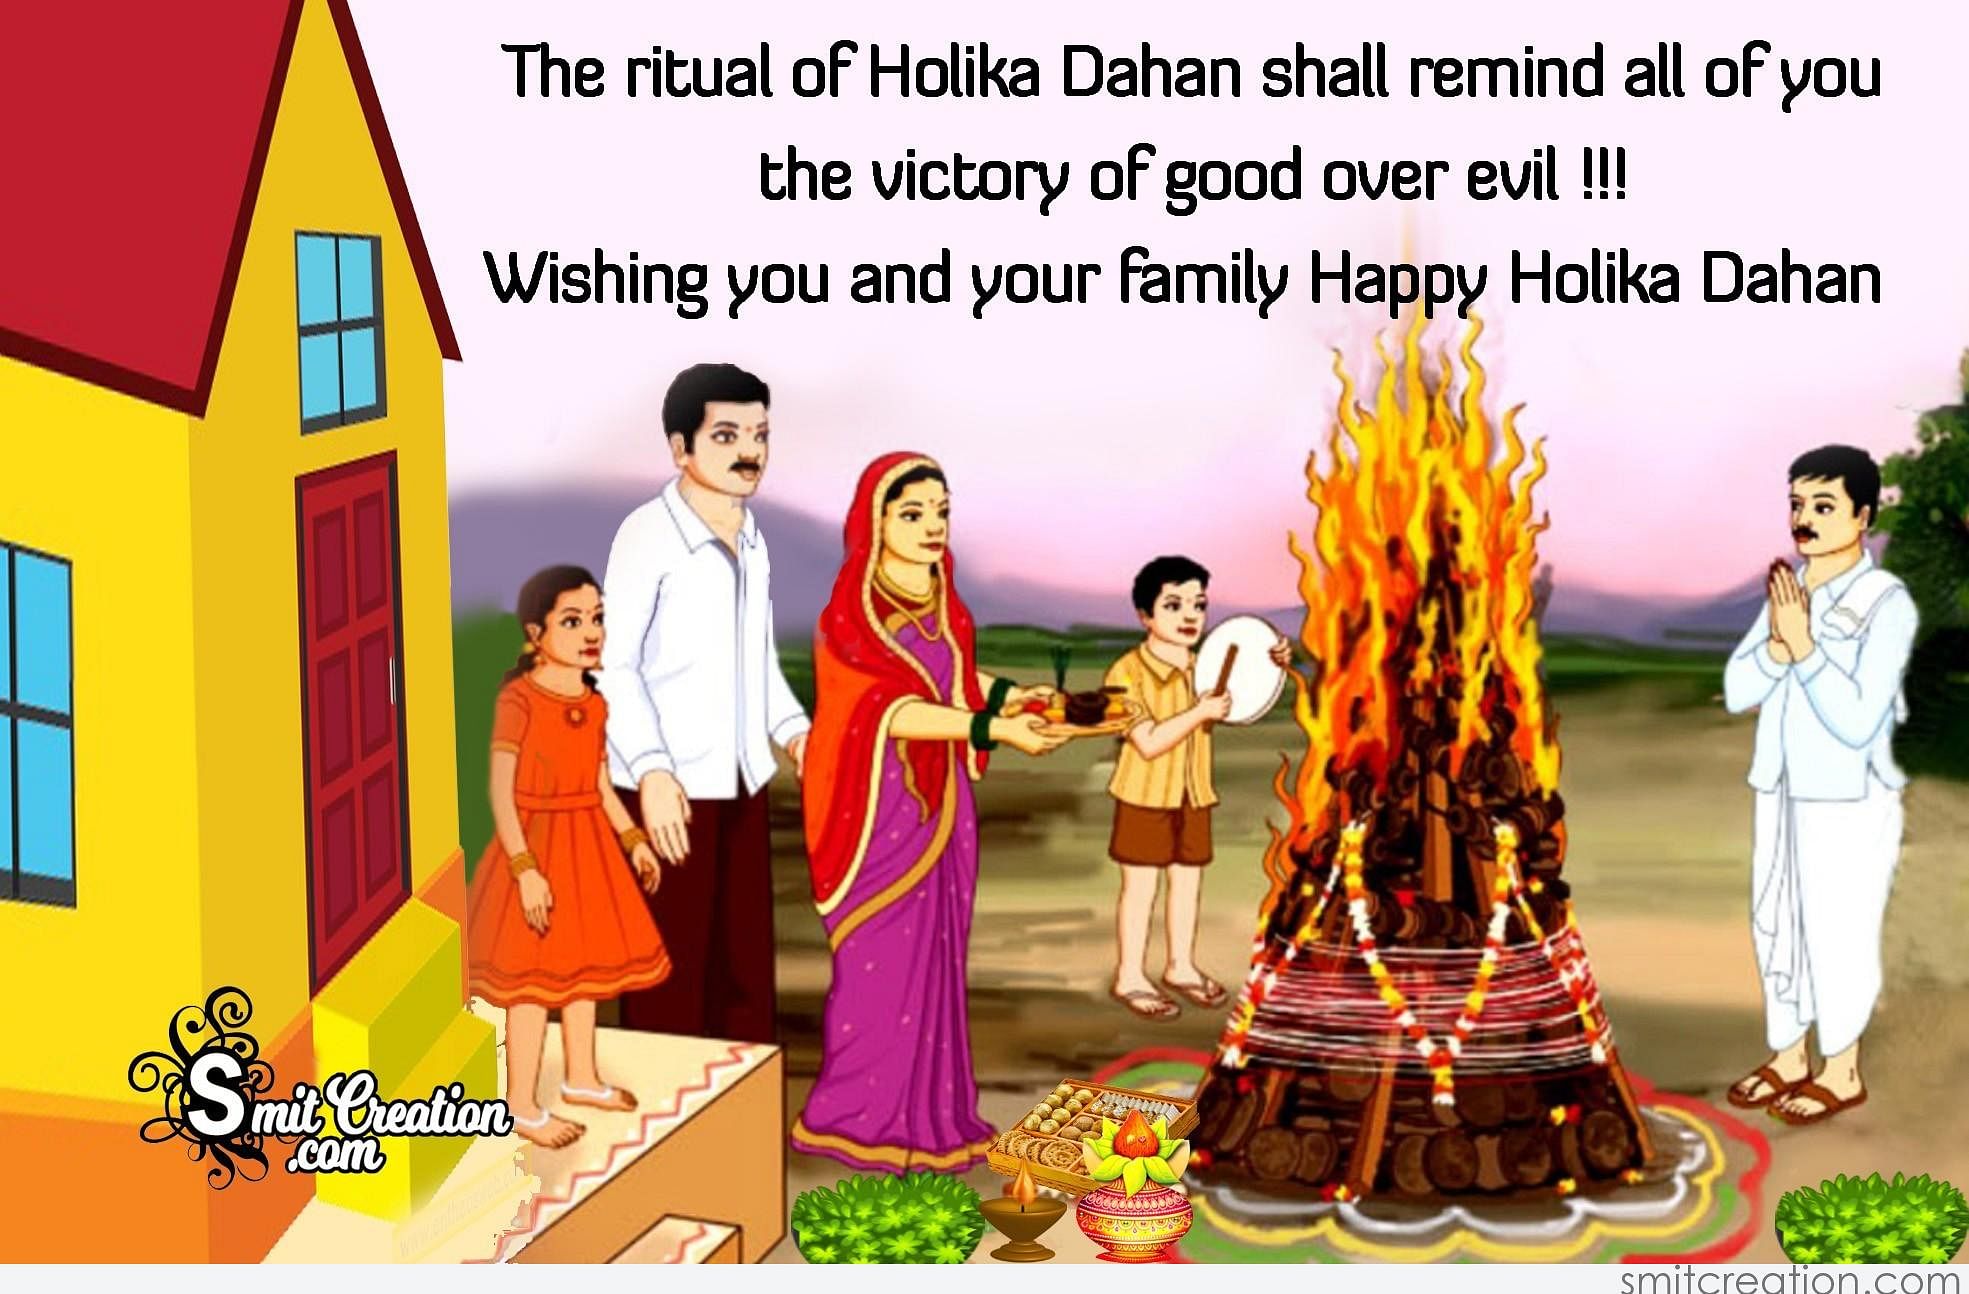 Holika Dahan 2019 Time, Images, Wallpapers, Animated Gifs | Holi images,  Holi wishes, Happy holi